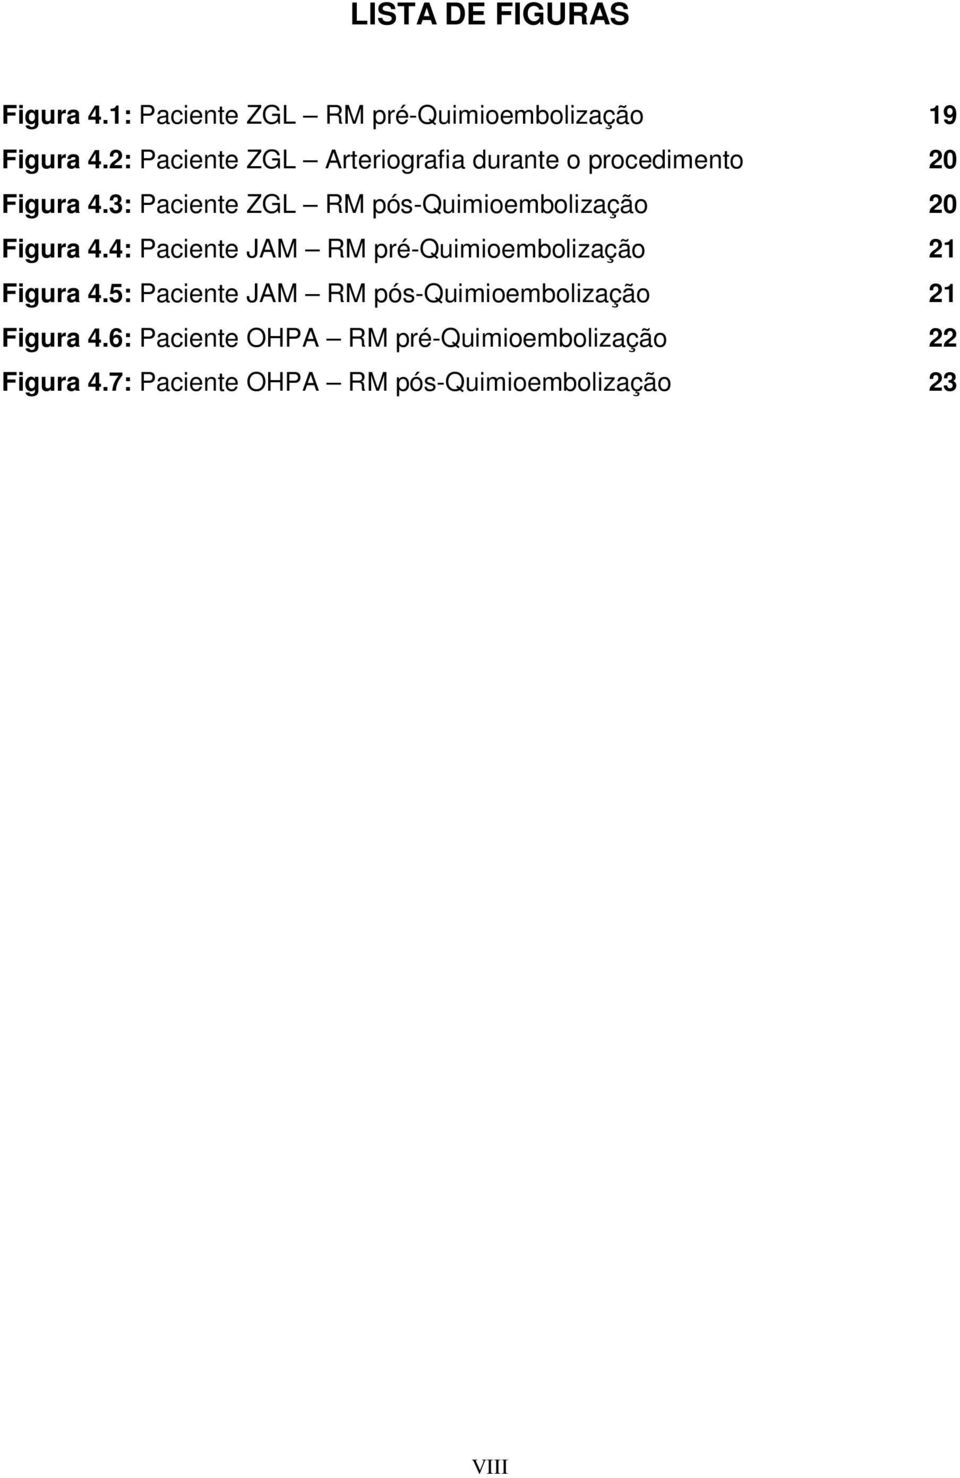 3: Paciente ZGL RM pós-quimioembolização 20 Figura 4.